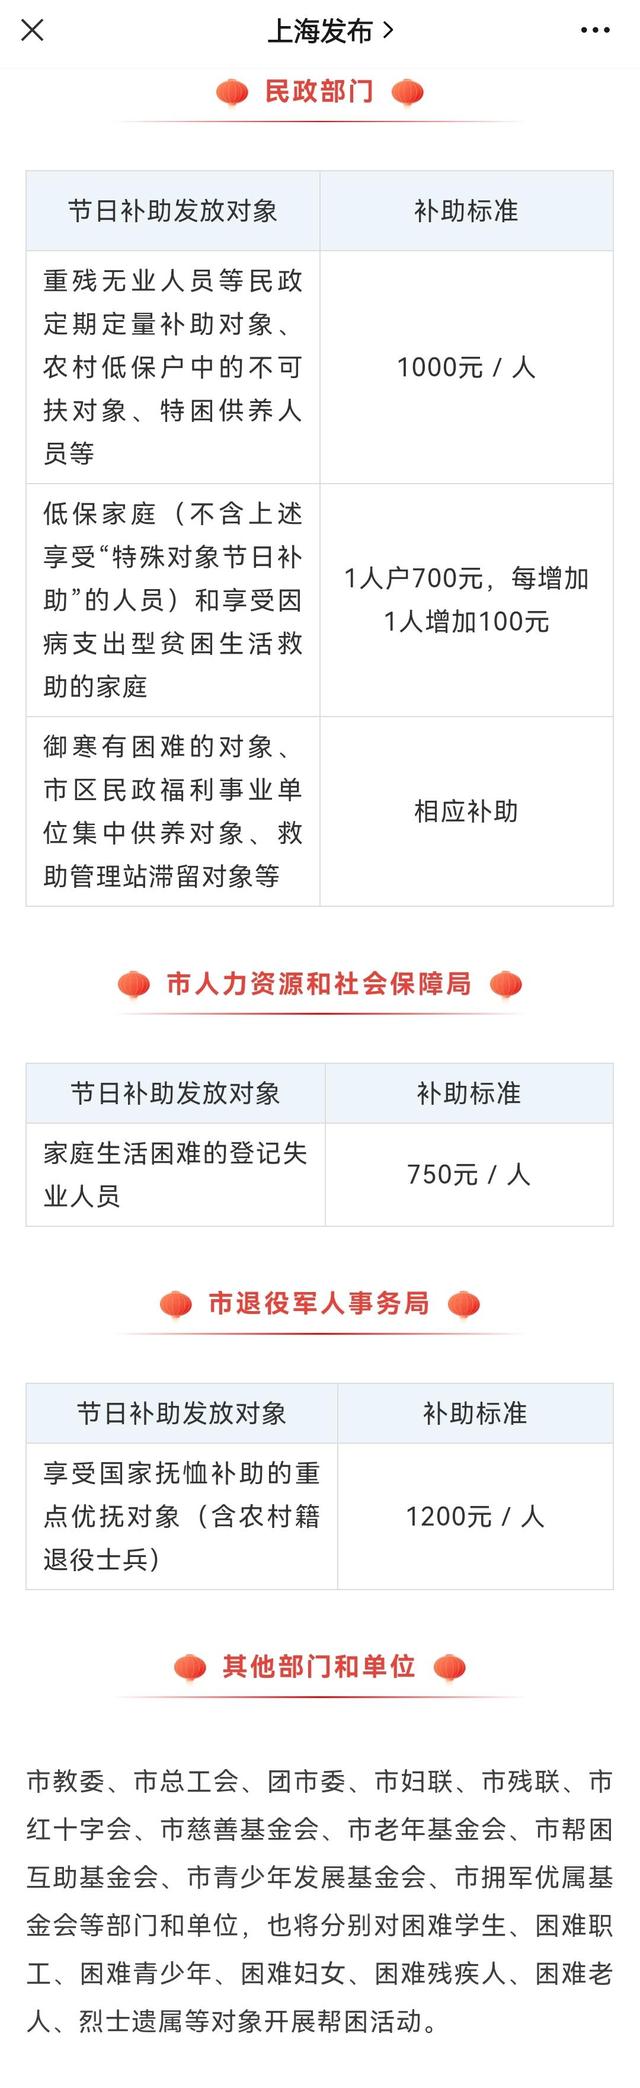 上海老人综合补贴,上海老人综合补贴政策